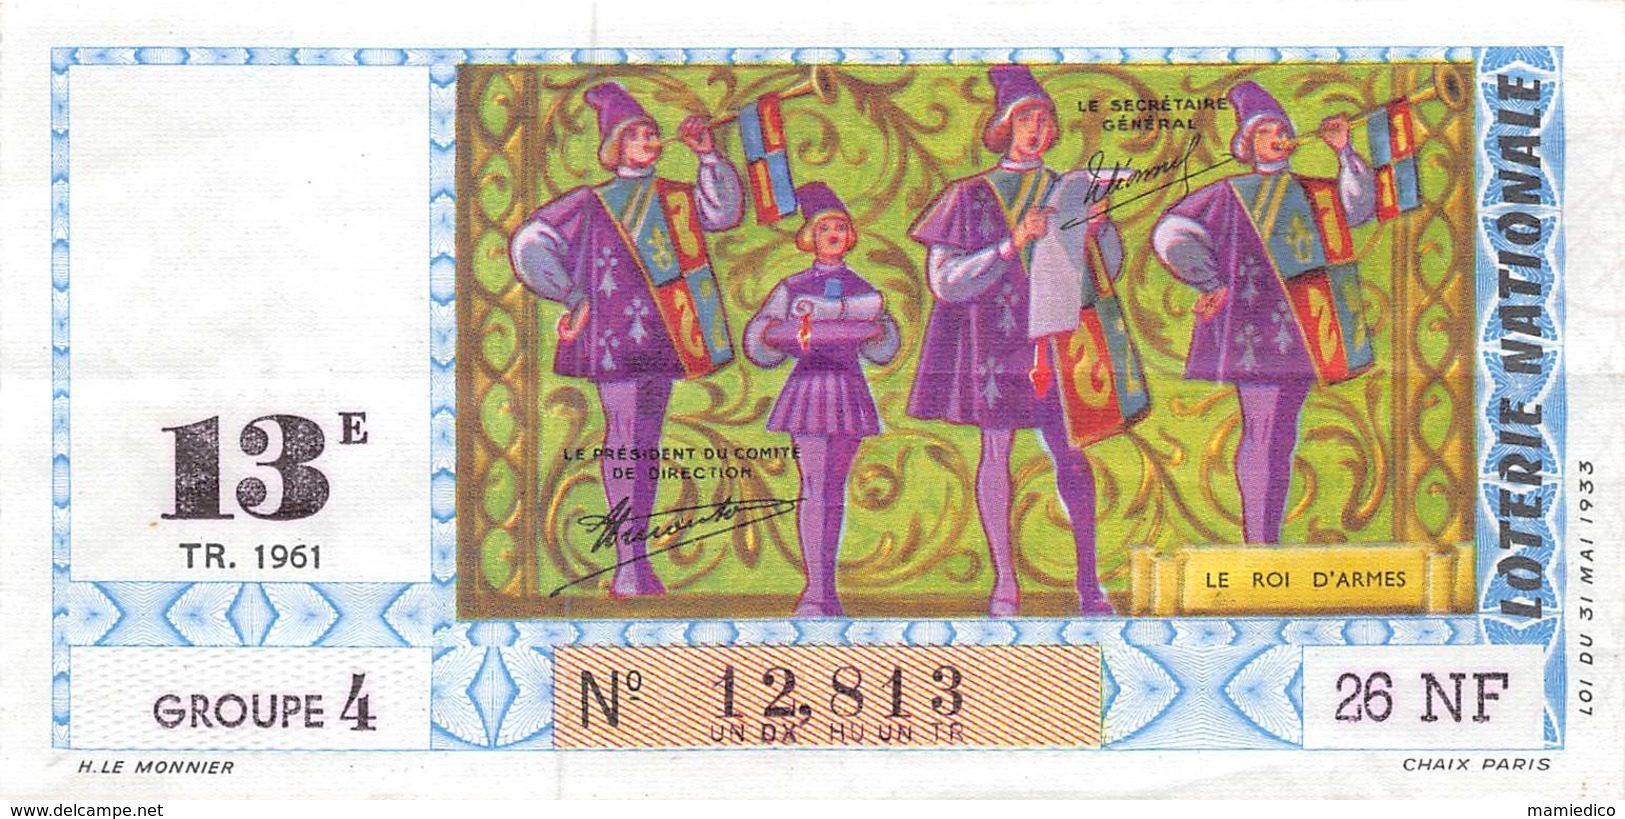 5 Billets De La LOTERIE NATIONALE, Neufs, Impeccables.1961 - Billets De Loterie